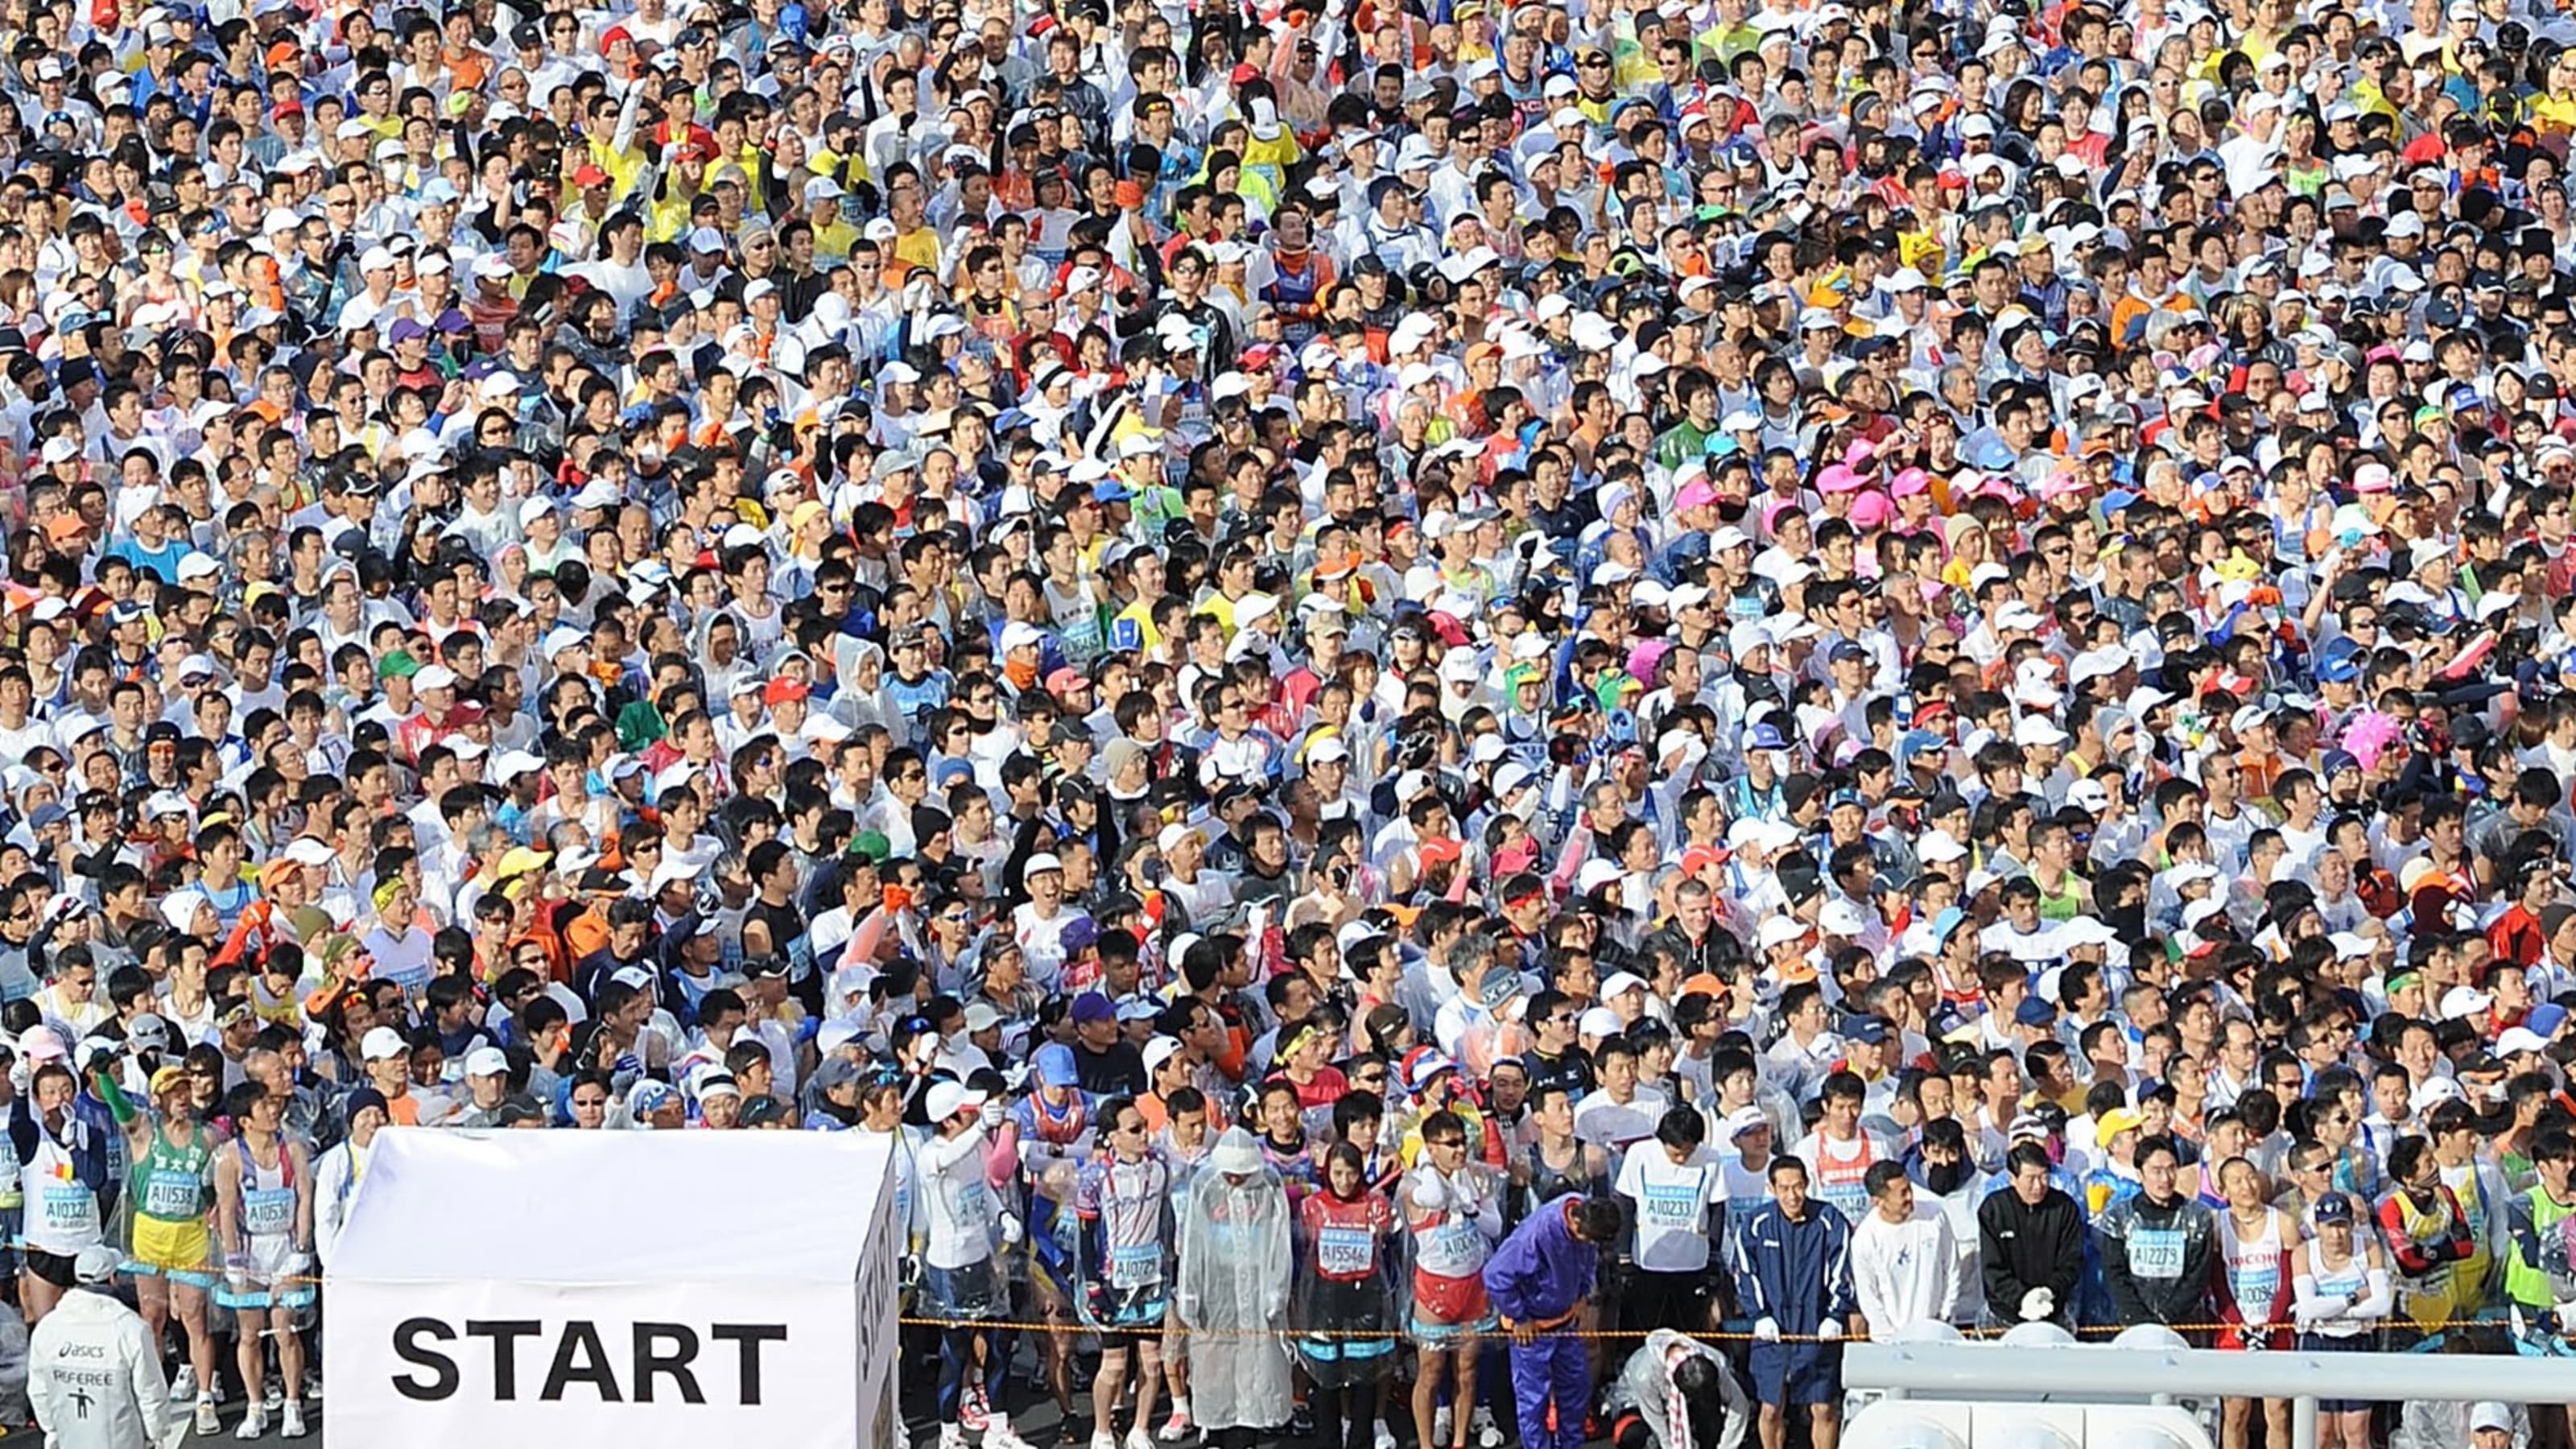 名古屋ウィメンズマラソン 一般ランナーによる参加を中止 新型コロナウイルスの影響